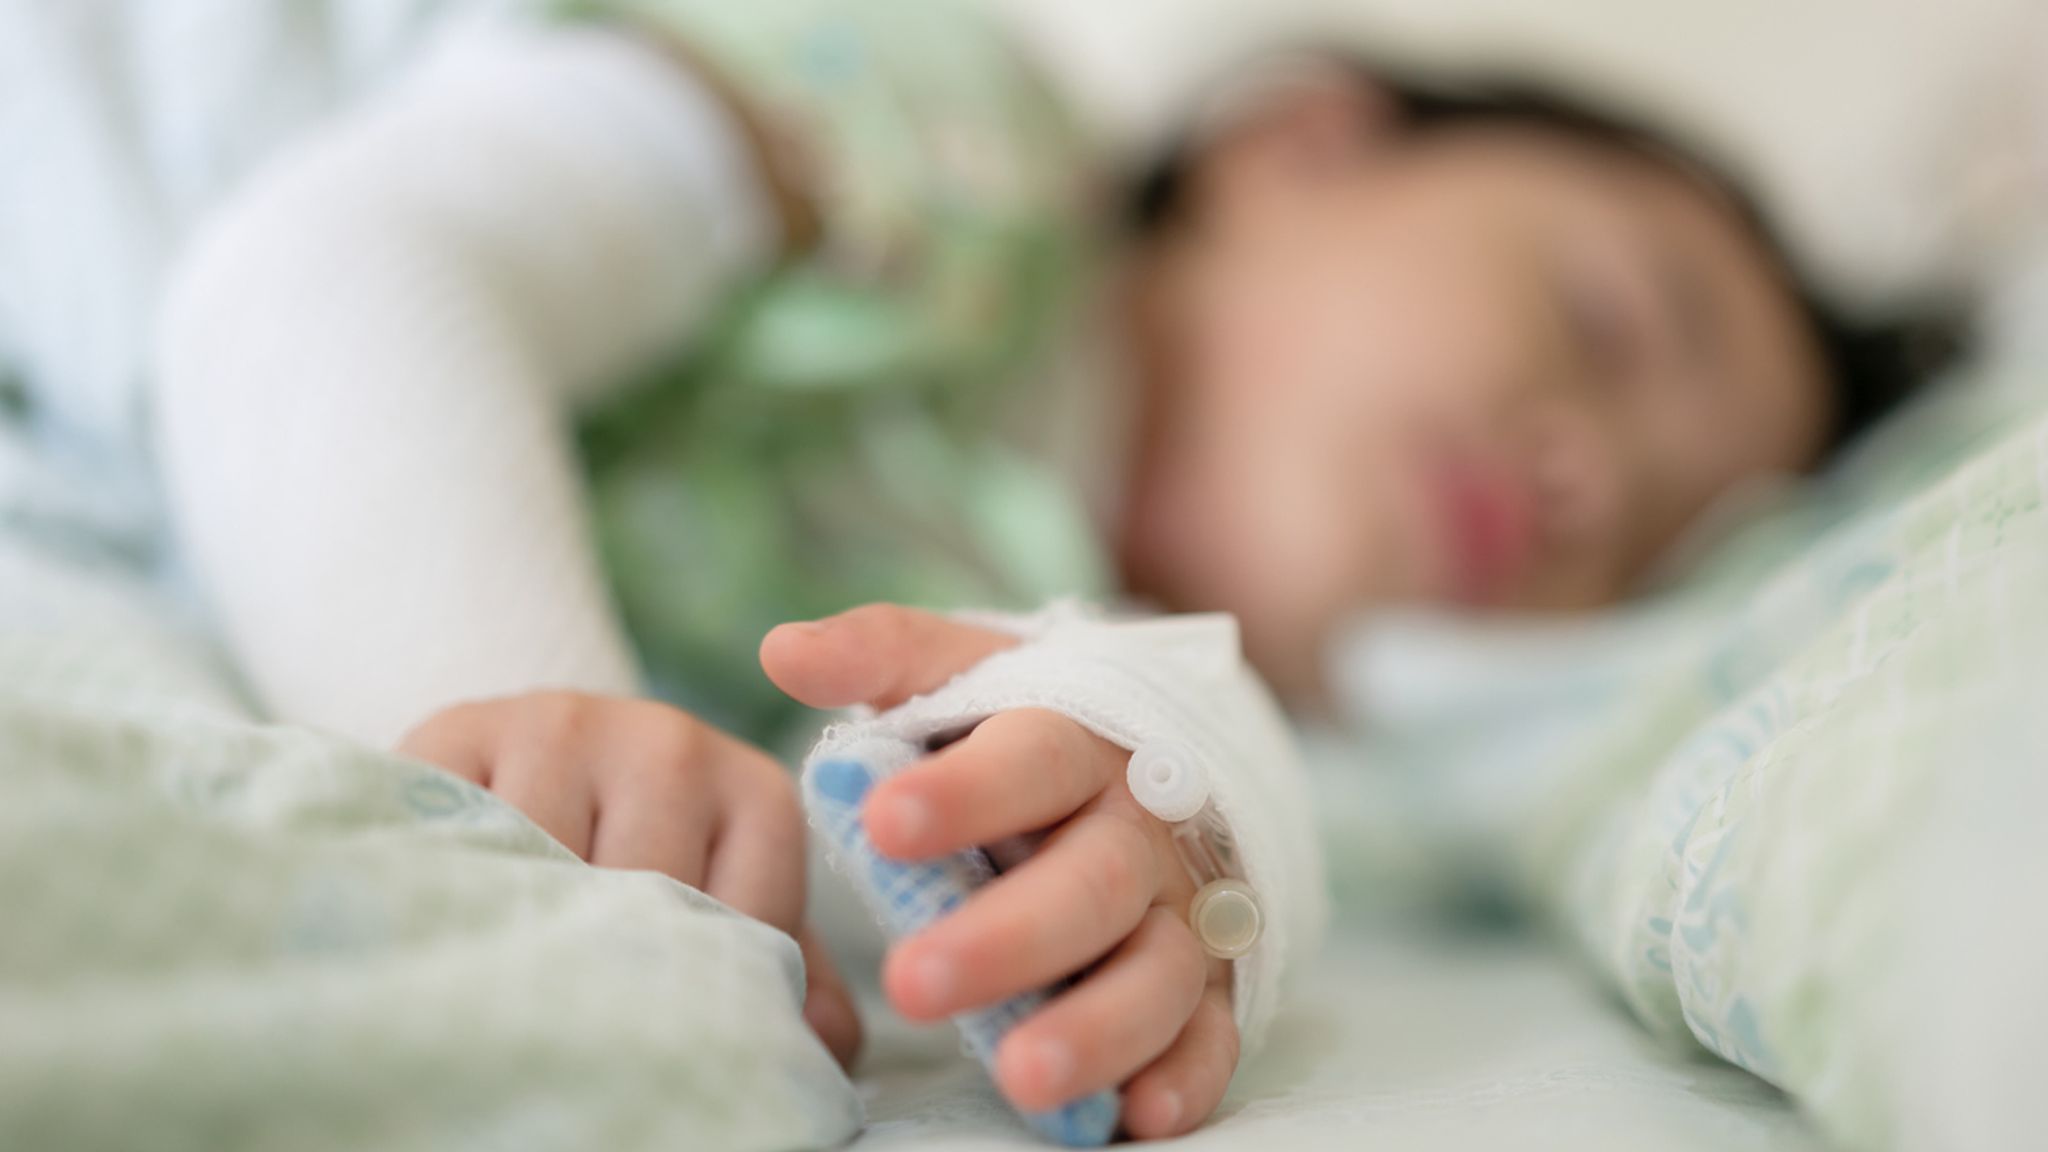 新冠肺炎儿童患者表现出与川崎病相似的症状